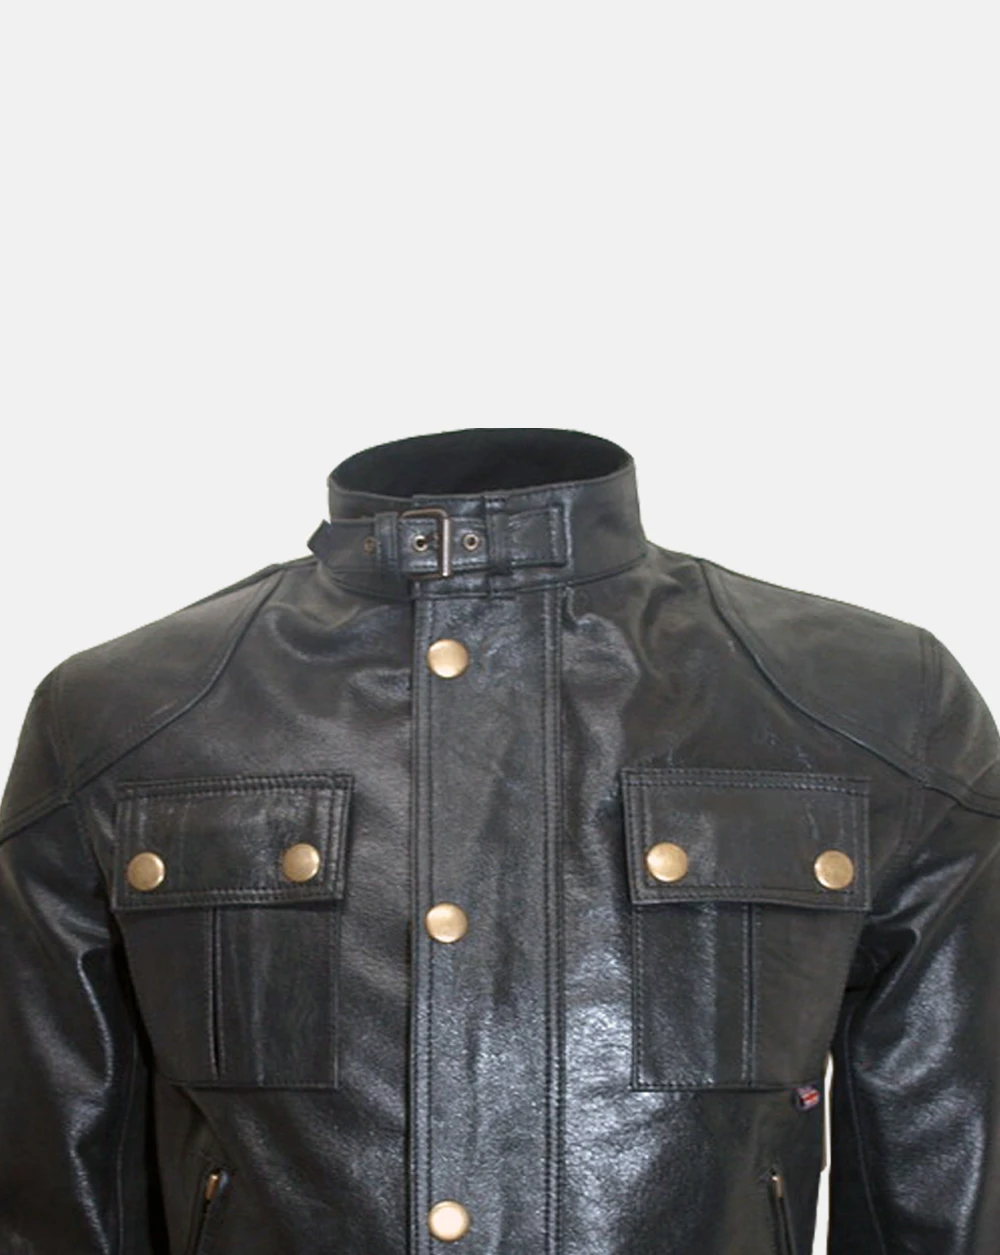 Buy Cougar Legend Leather Jacket